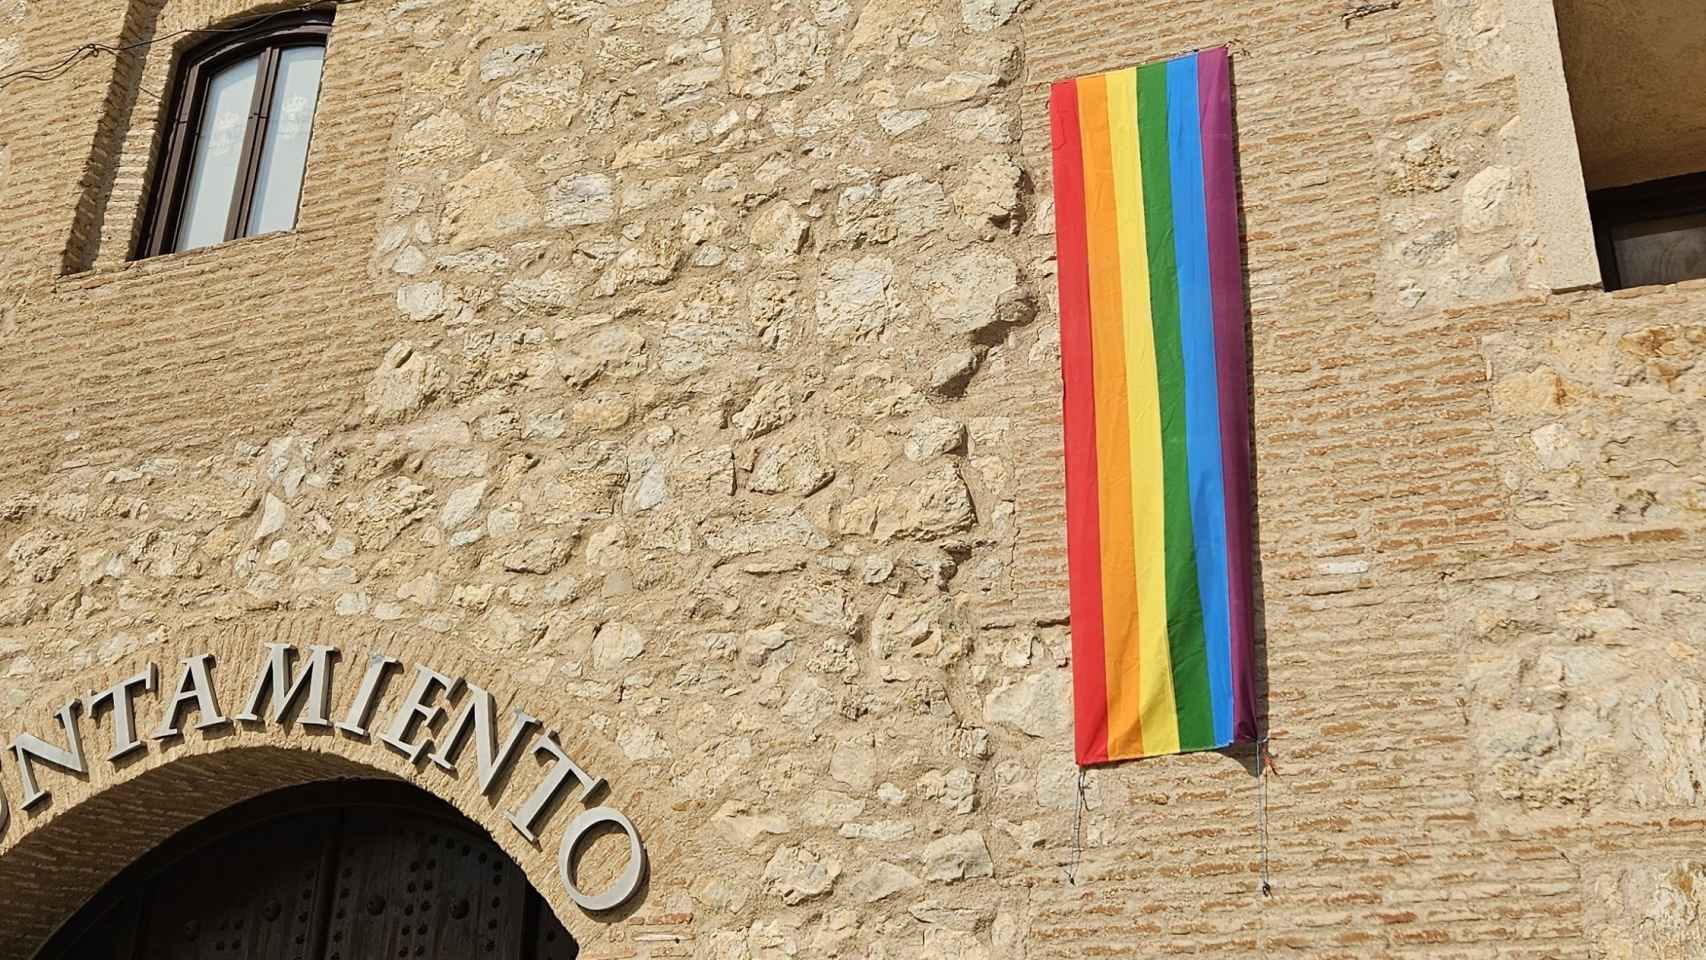 Así lucía la bandera arcoiris en la fachada del Ayuntamiento.